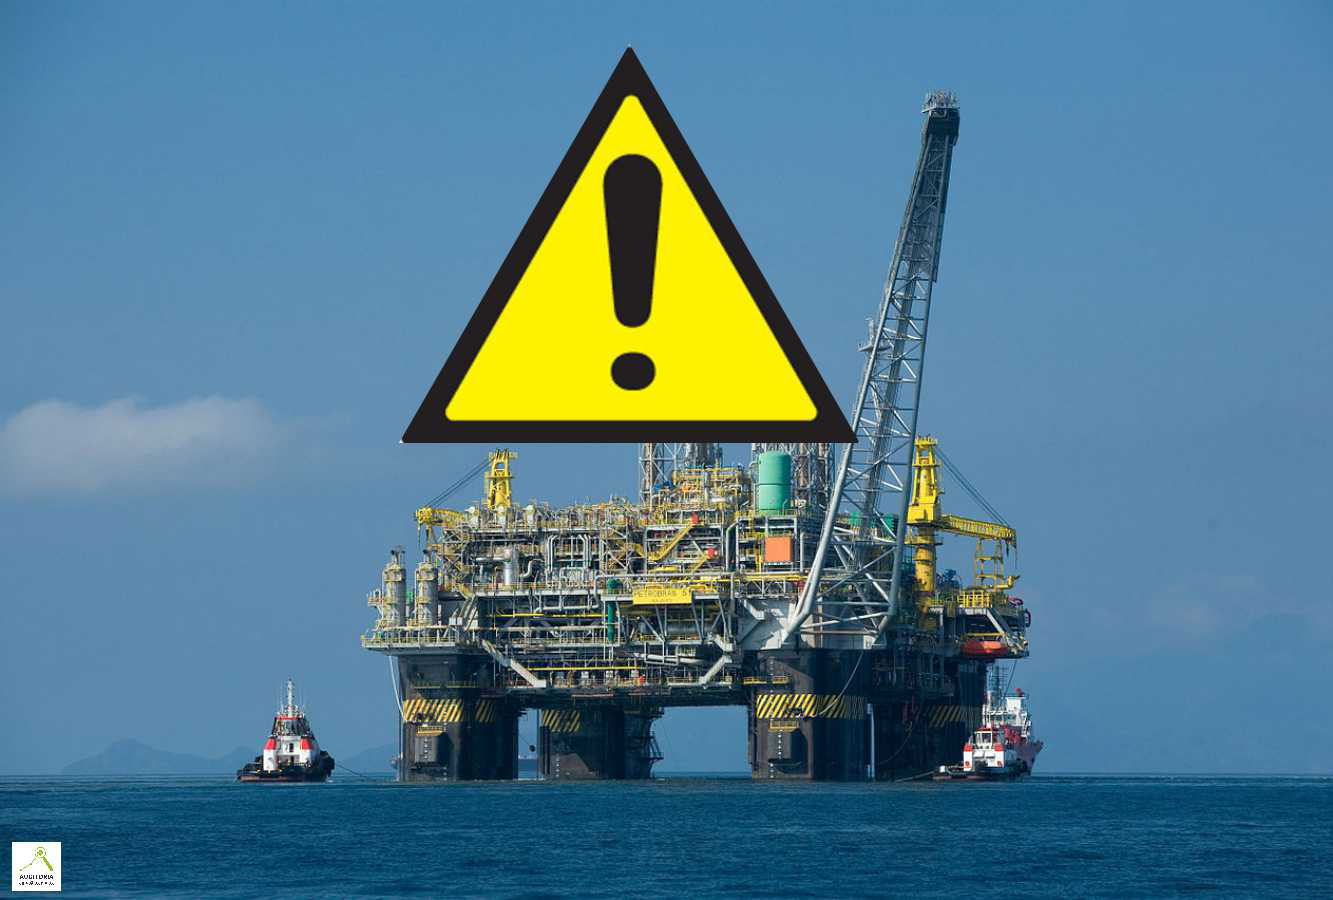 NÃO ao PL 8939/2017 (entrega do petróleo extraído de áreas do pré-sal diretamente a empresas estrangeiras, coloca em risco a PETROBRAS)